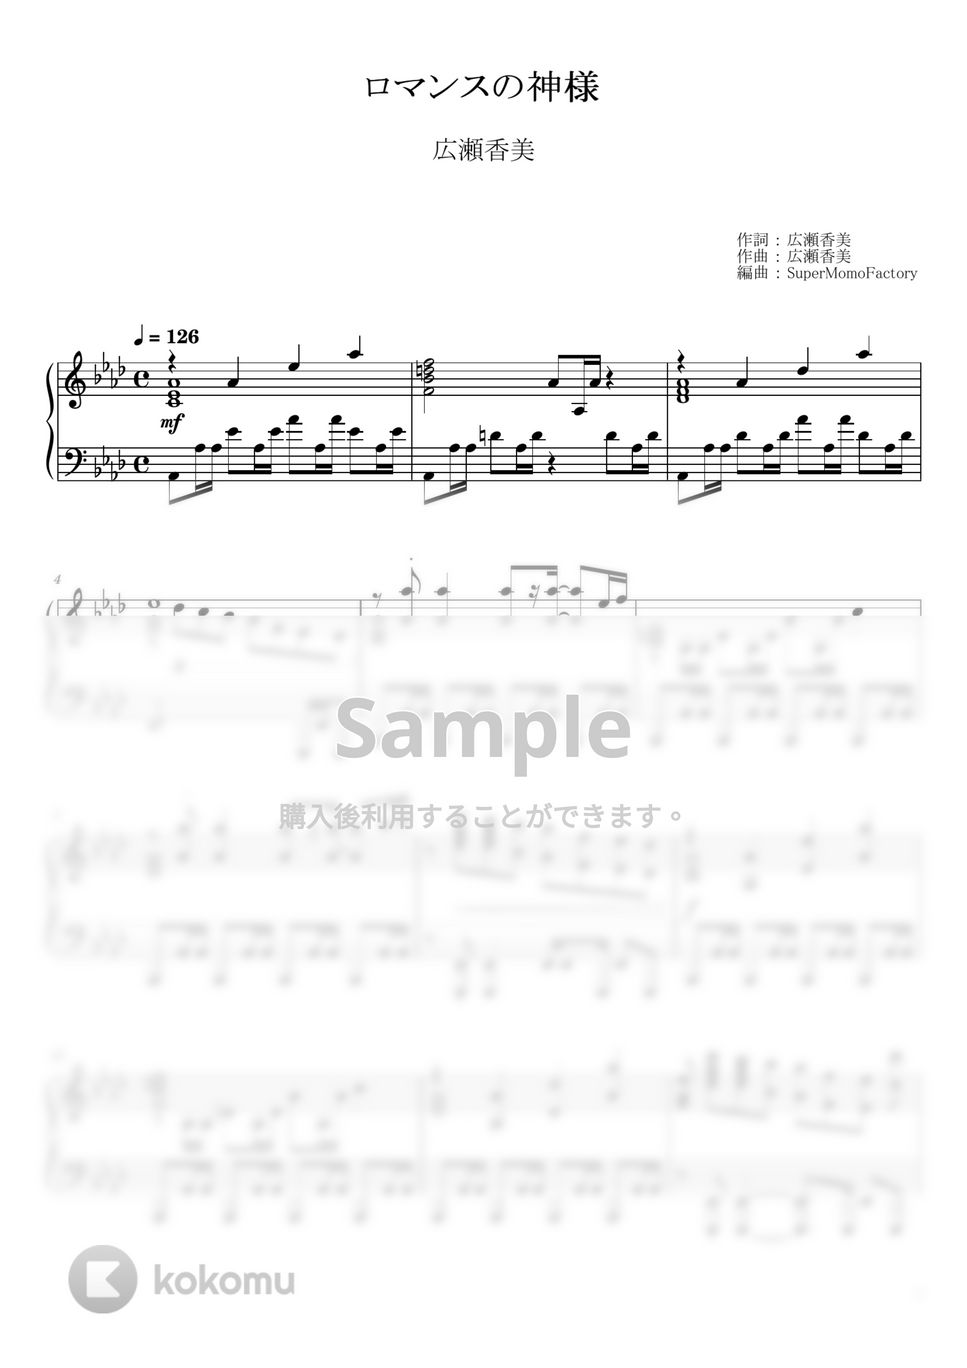 広瀬香美 - ロマンスの神様 (ピアノソロ / 上級) by SuperMomoFactory